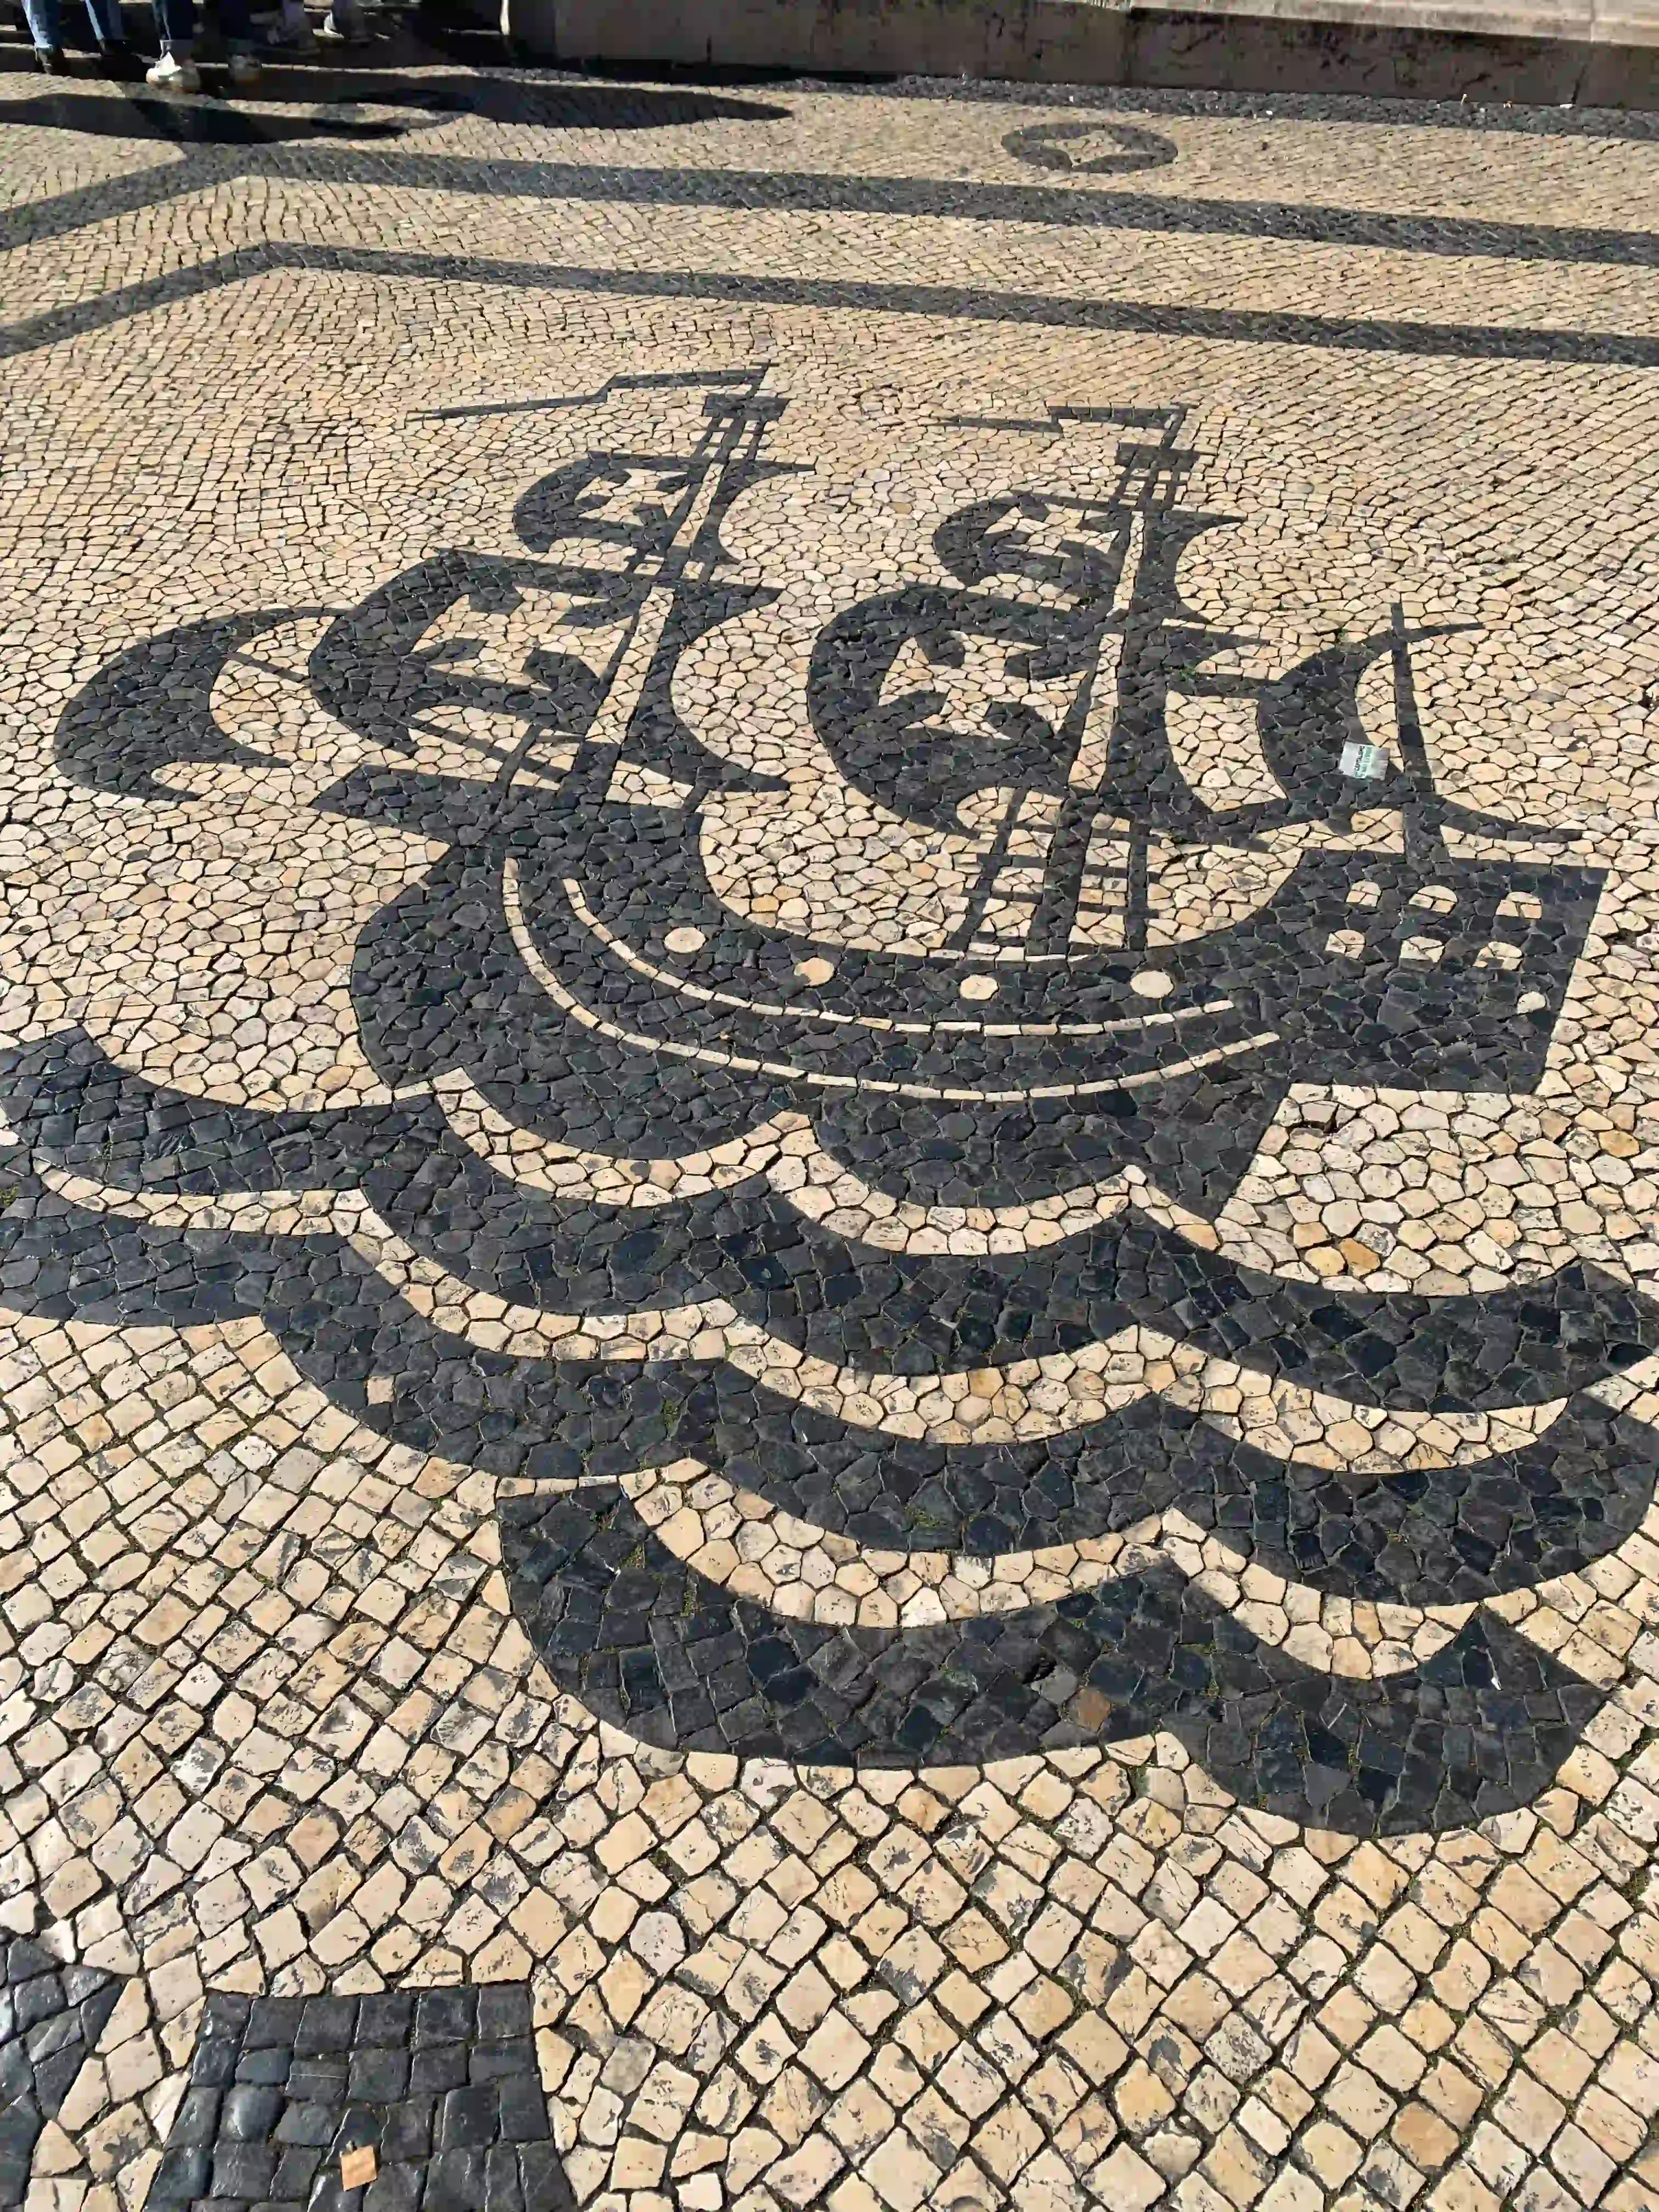 Sidewalk art in Lisbon